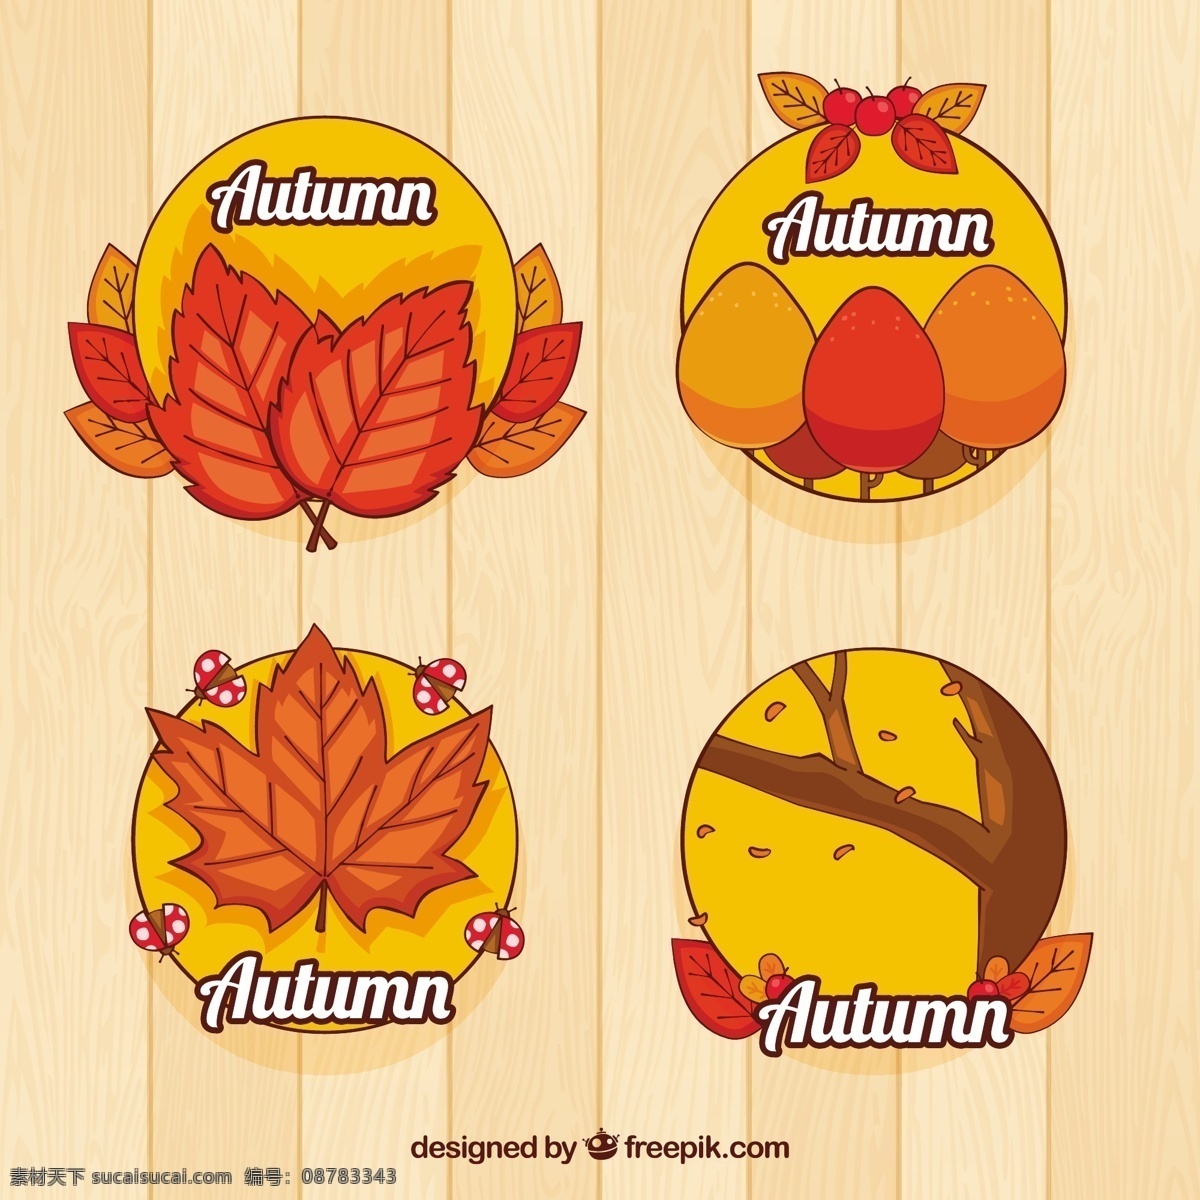 有趣 秋天 标签 具有 手绘 风格 树 手 叶 徽章 自然 邮票 树叶 绘画 会徽 符号 酷 树枝